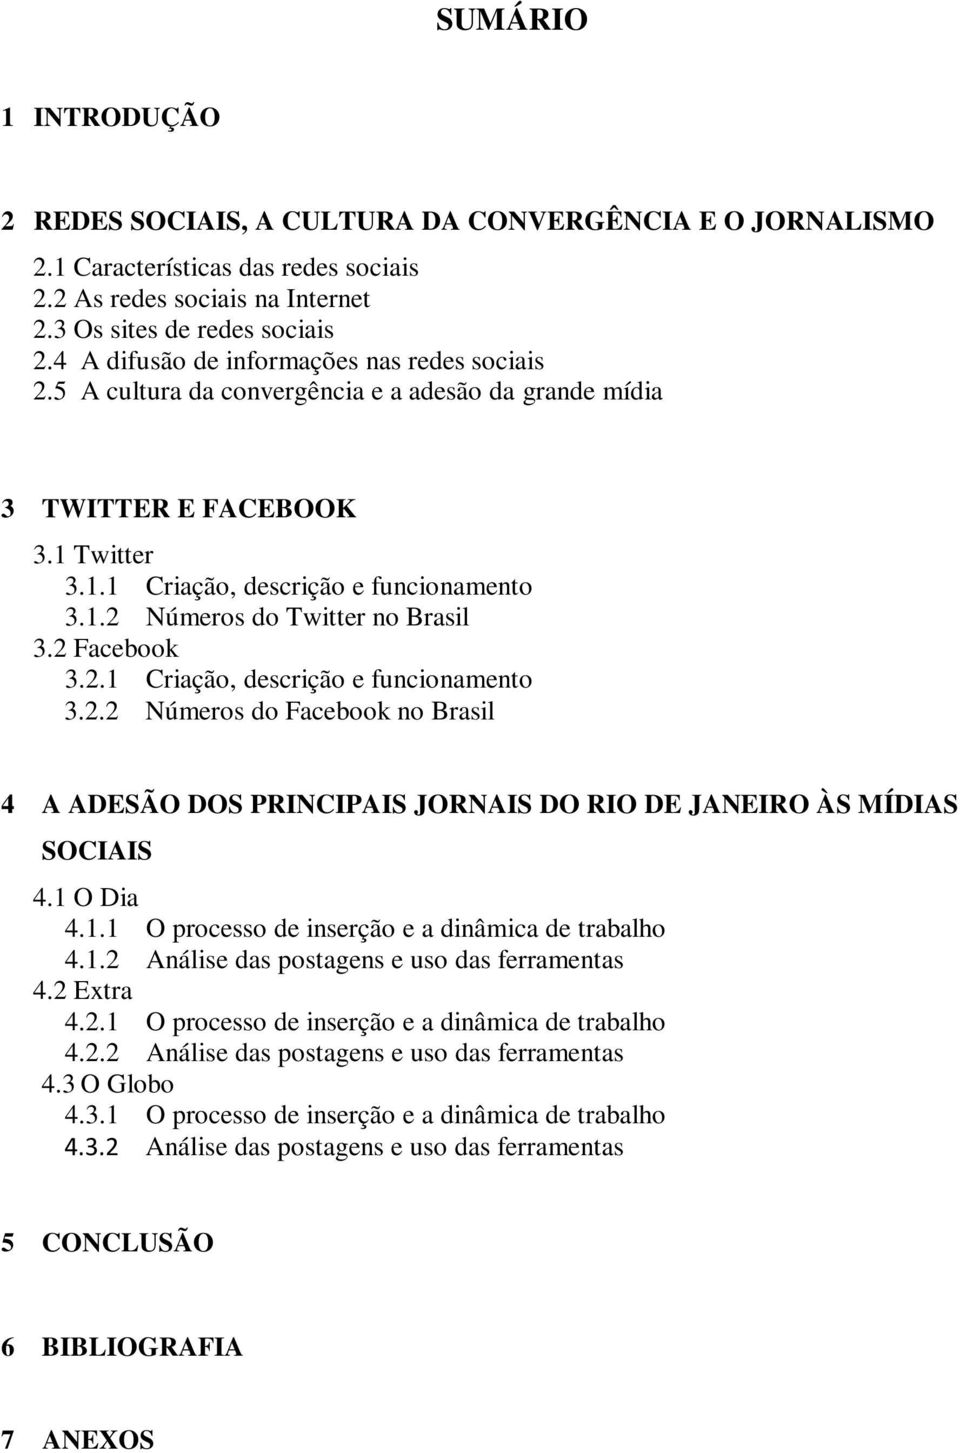 2 Facebook 3.2.1 Criação, descrição e funcionamento 3.2.2 Números do Facebook no Brasil 4 A ADESÃO DOS PRINCIPAIS JORNAIS DO RIO DE JANEIRO ÀS MÍDIAS SOCIAIS 4.1 O Dia 4.1.1 O processo de inserção e a dinâmica de trabalho 4.